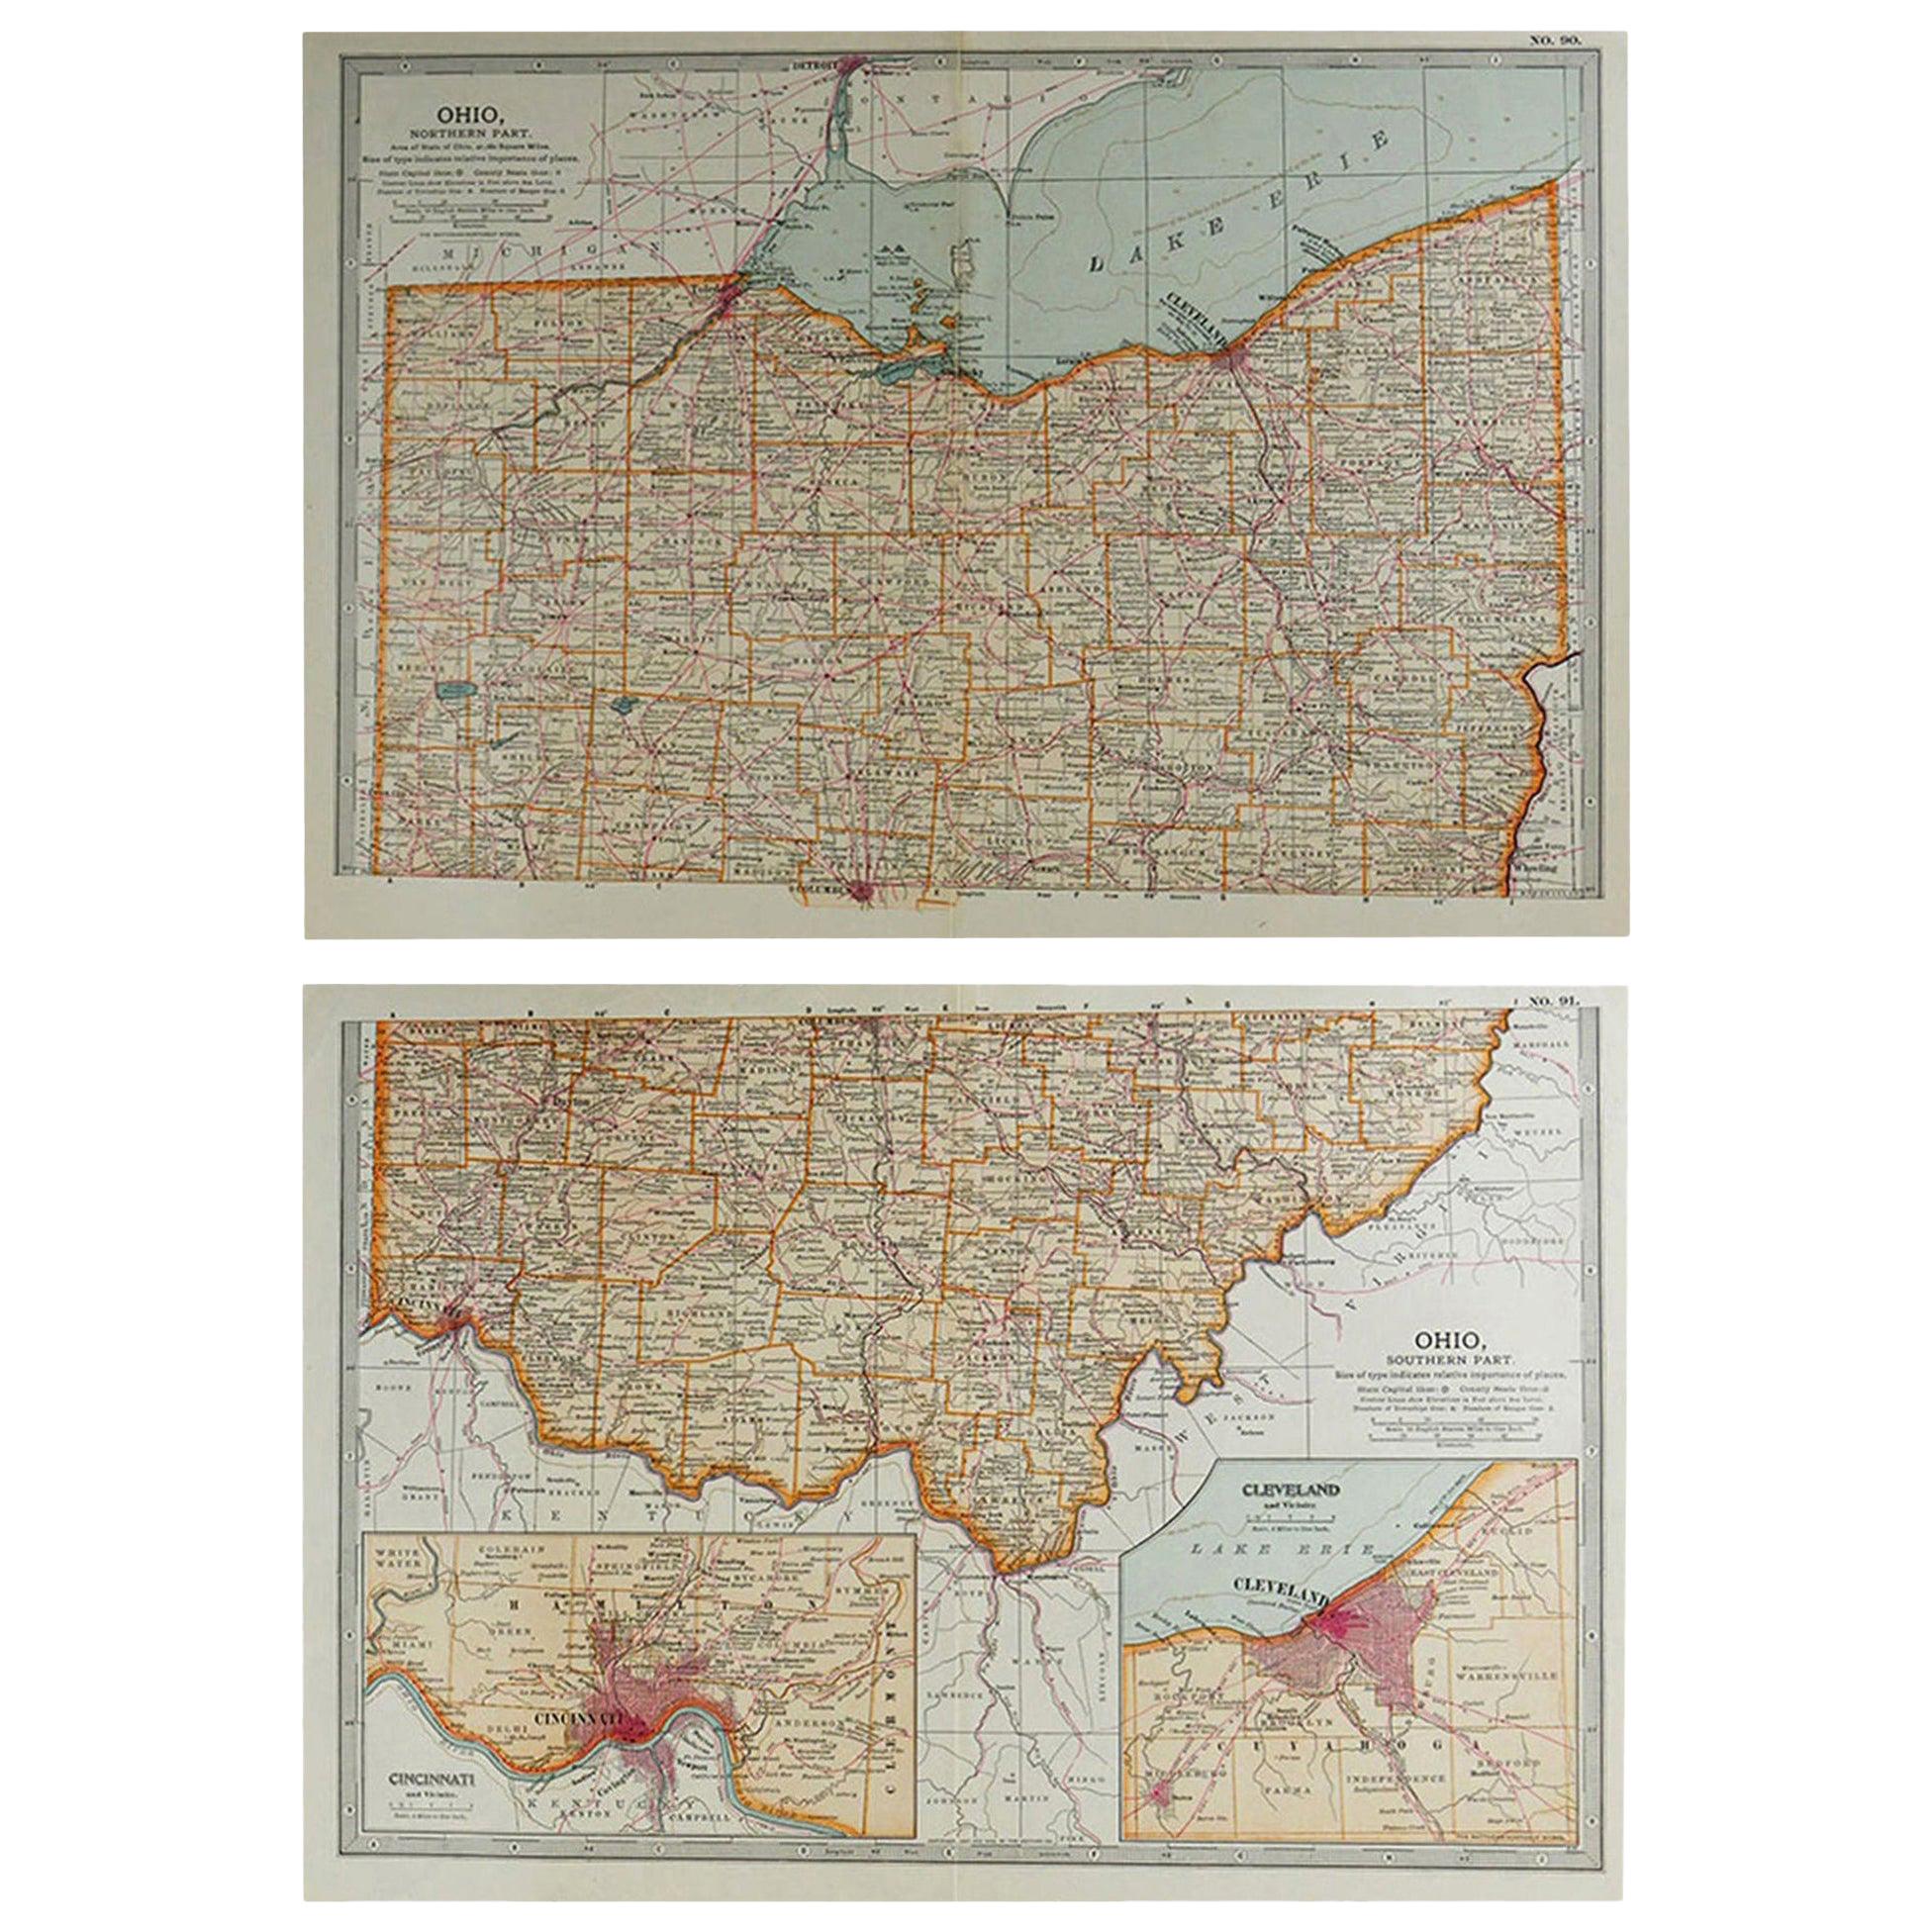 Original Antique Map of Ohio, circa 1890